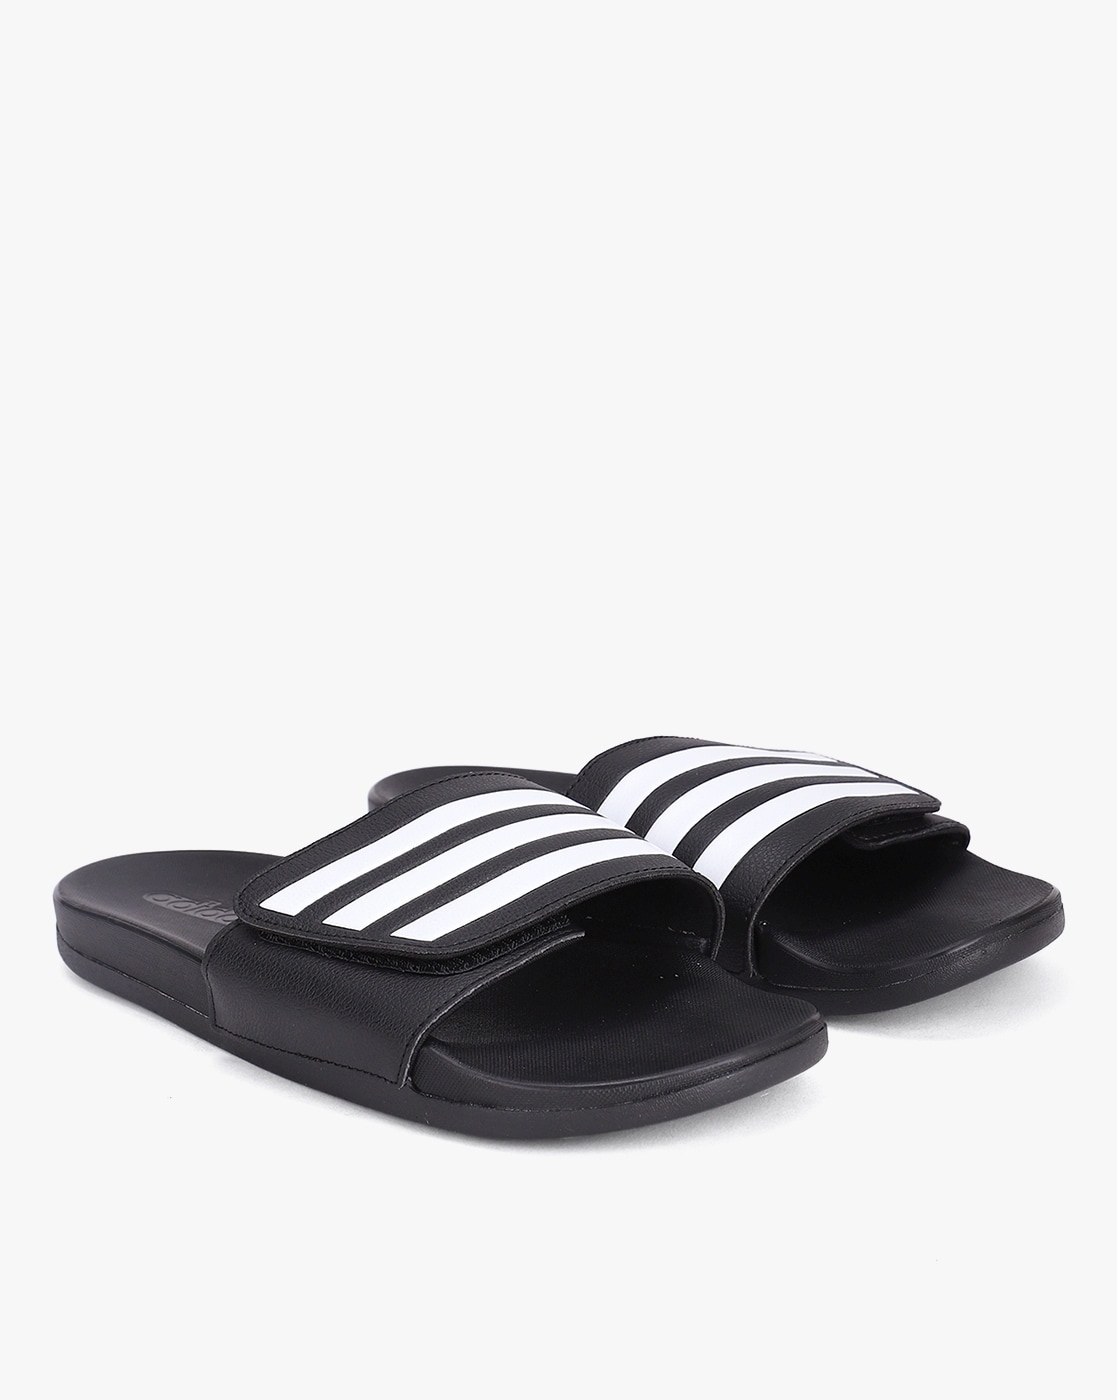 adidas Adilette Comfort Sandals  Black  adidas India